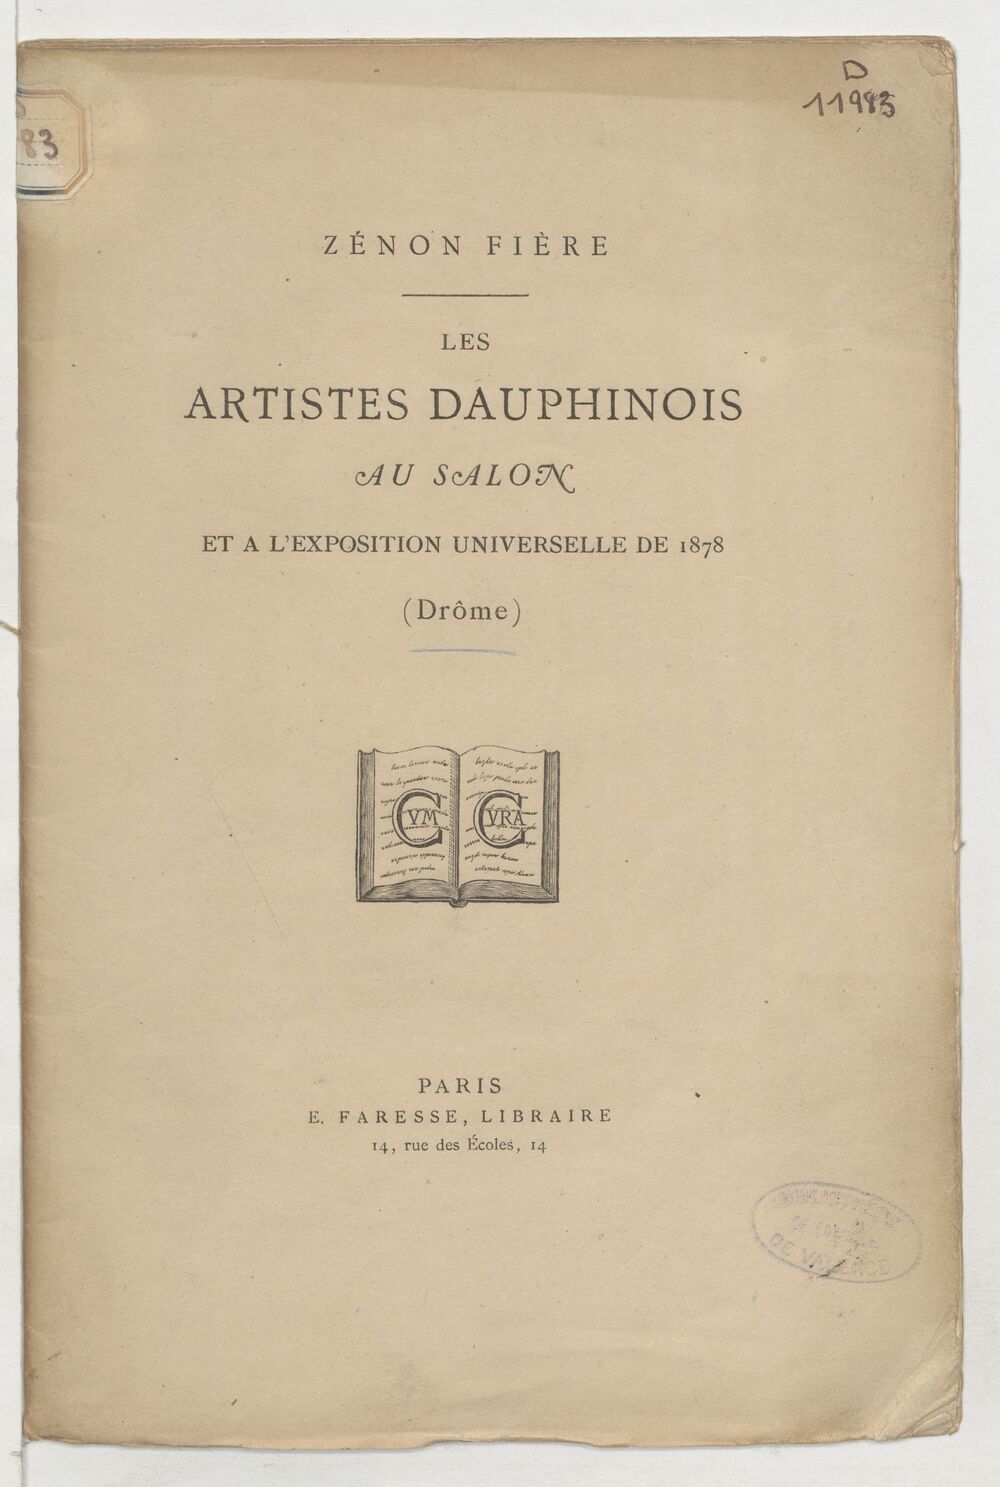 Les artistes dauphinois au Salon et à l'Exposition universelle de 1878 (Drôme) / [par] Zénon Fière